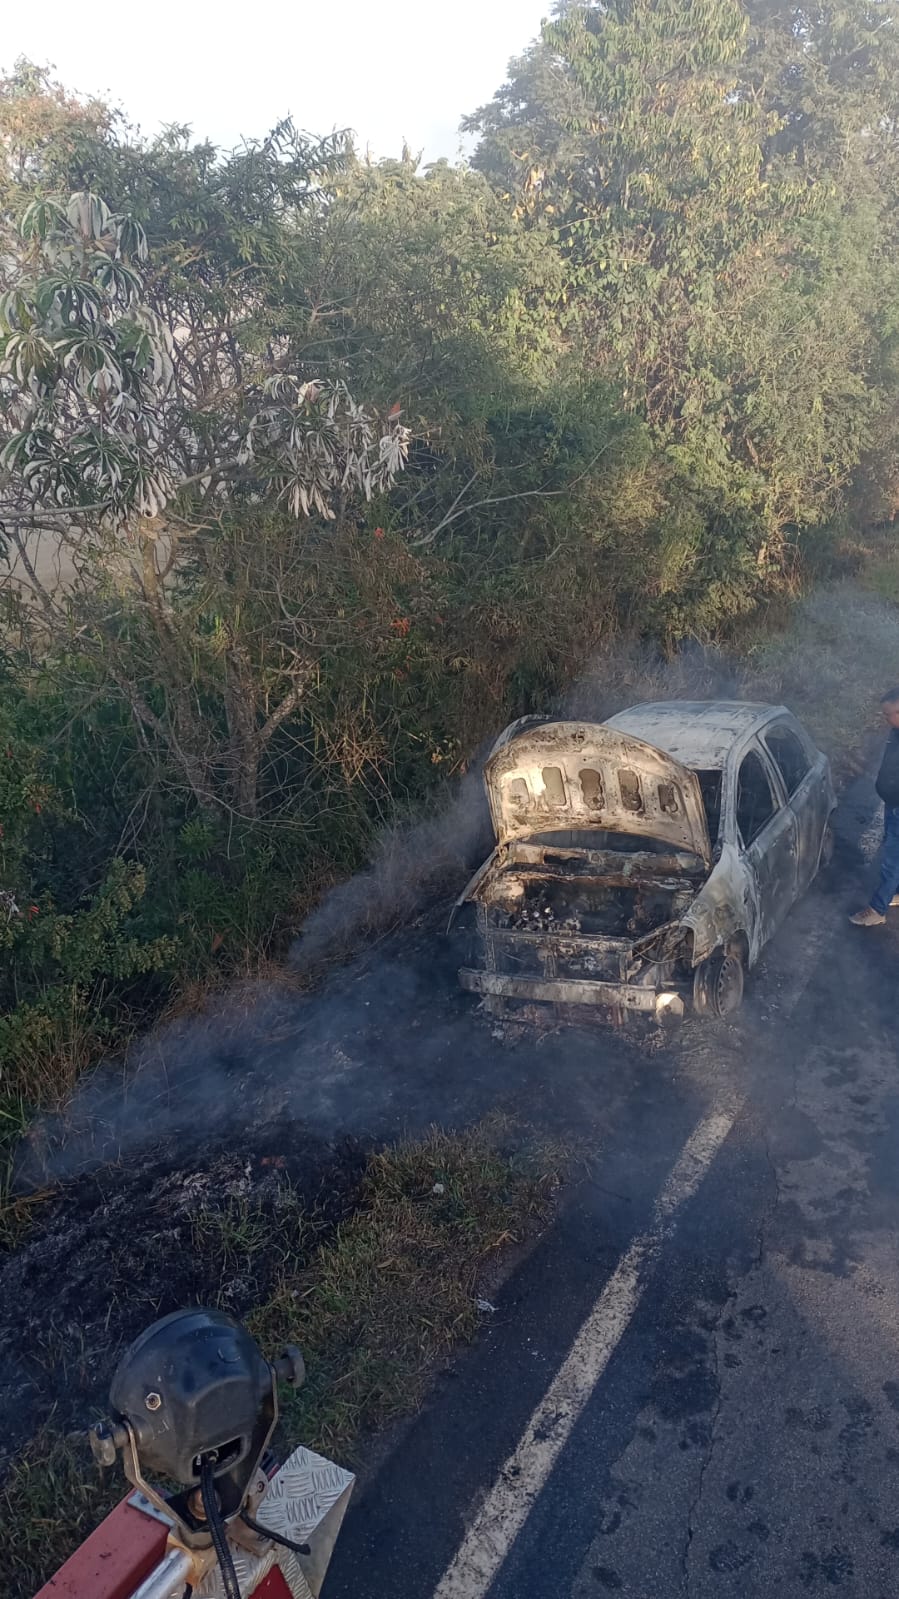 Bombeiros combatem fogo em veículo em rodovia